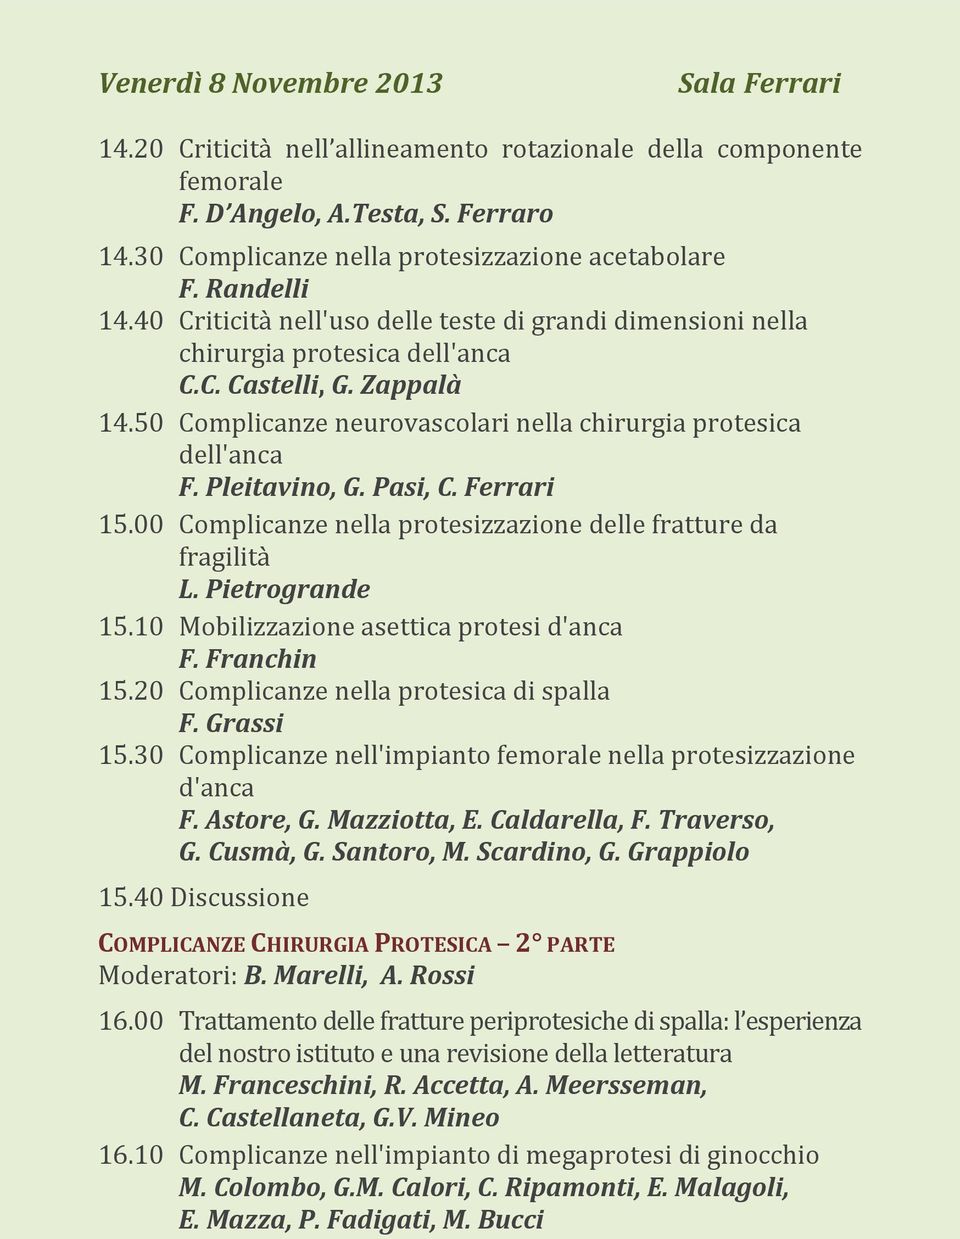 Pleitavino, G. Pasi, C. Ferrari 15.00 Complicanze nella protesizzazione delle fratture da fragilità L. Pietrogrande 15.10 Mobilizzazione asettica protesi d'anca F. Franchin 15.